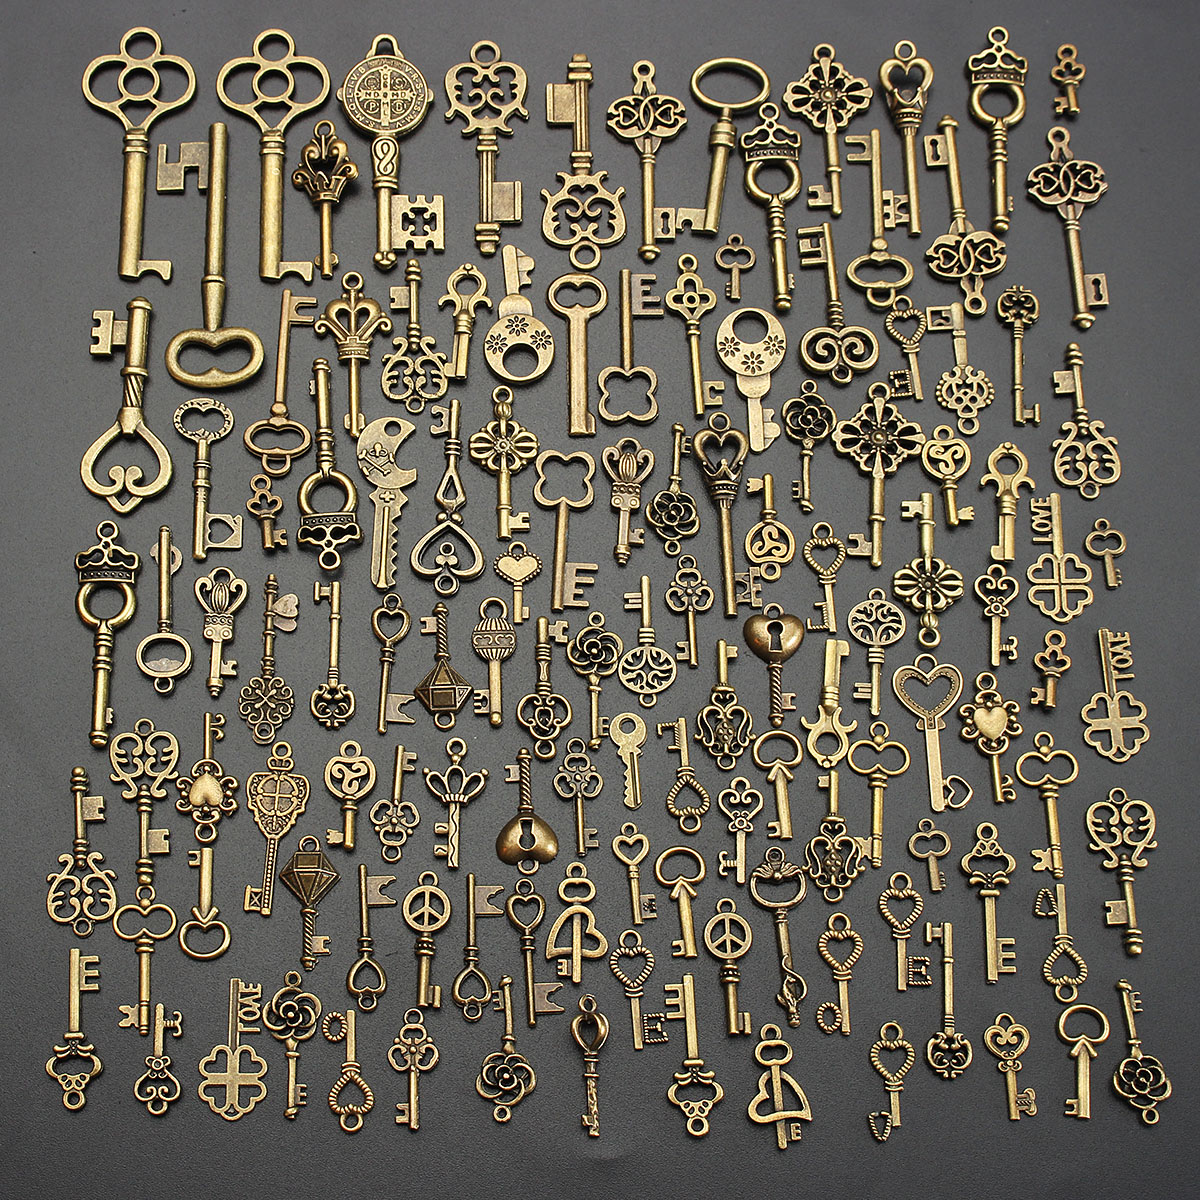 125Pcs-Vintage-Bronze-Key-For-Pendant-Necklace-Bracelet-DIY-Handmade-Accessories-Decoration-1192644-4